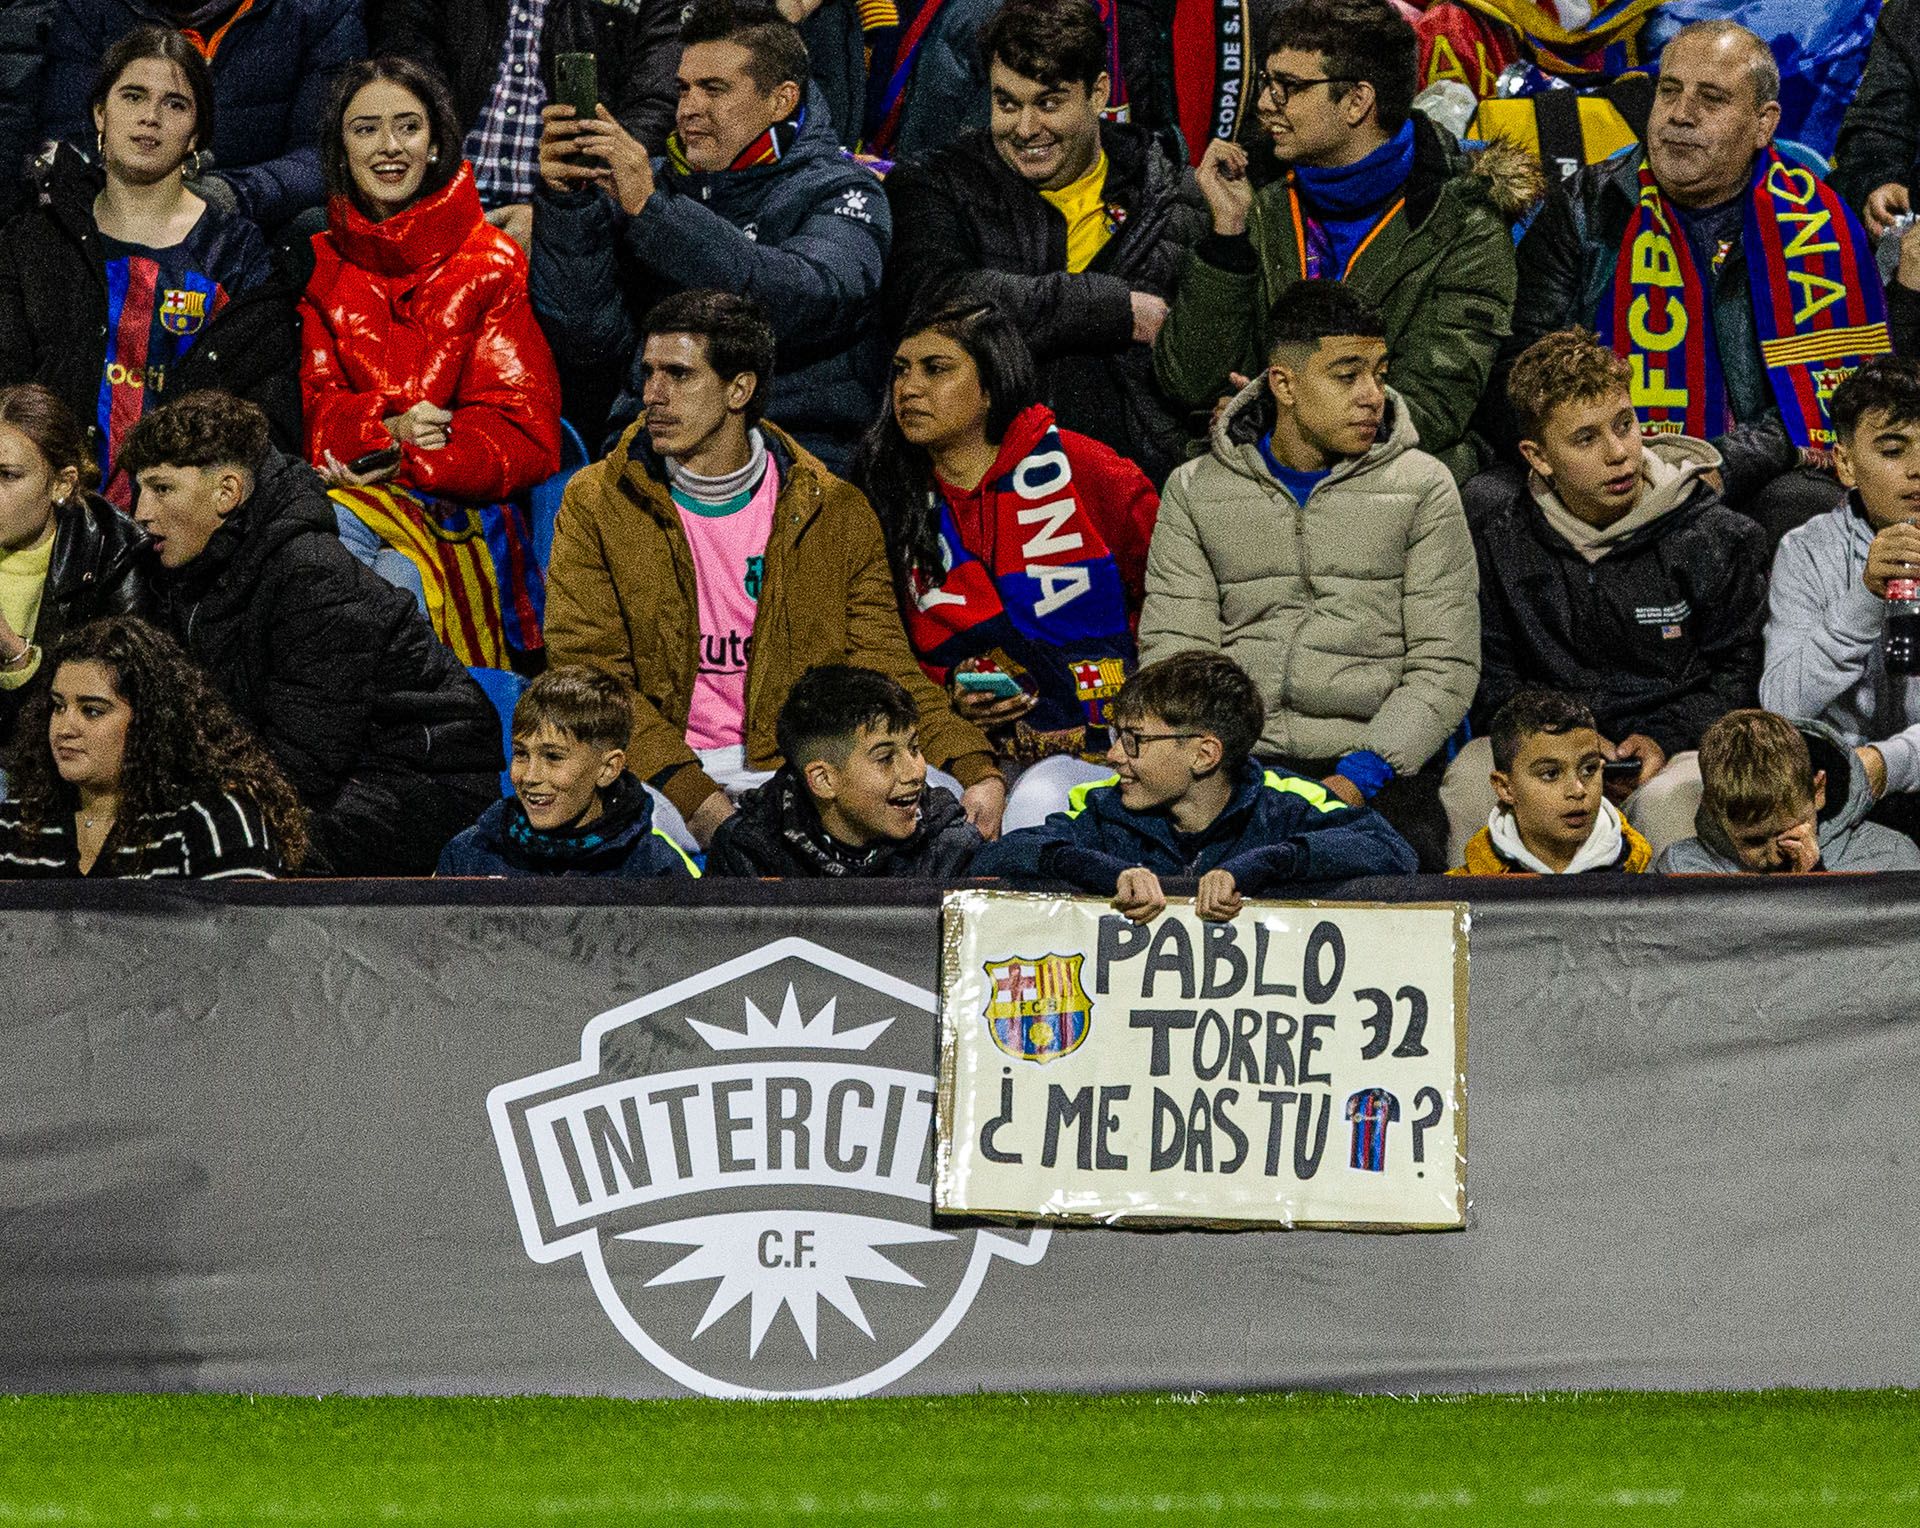 Intercity - Barça: partido de Copa del Rey en Alicante